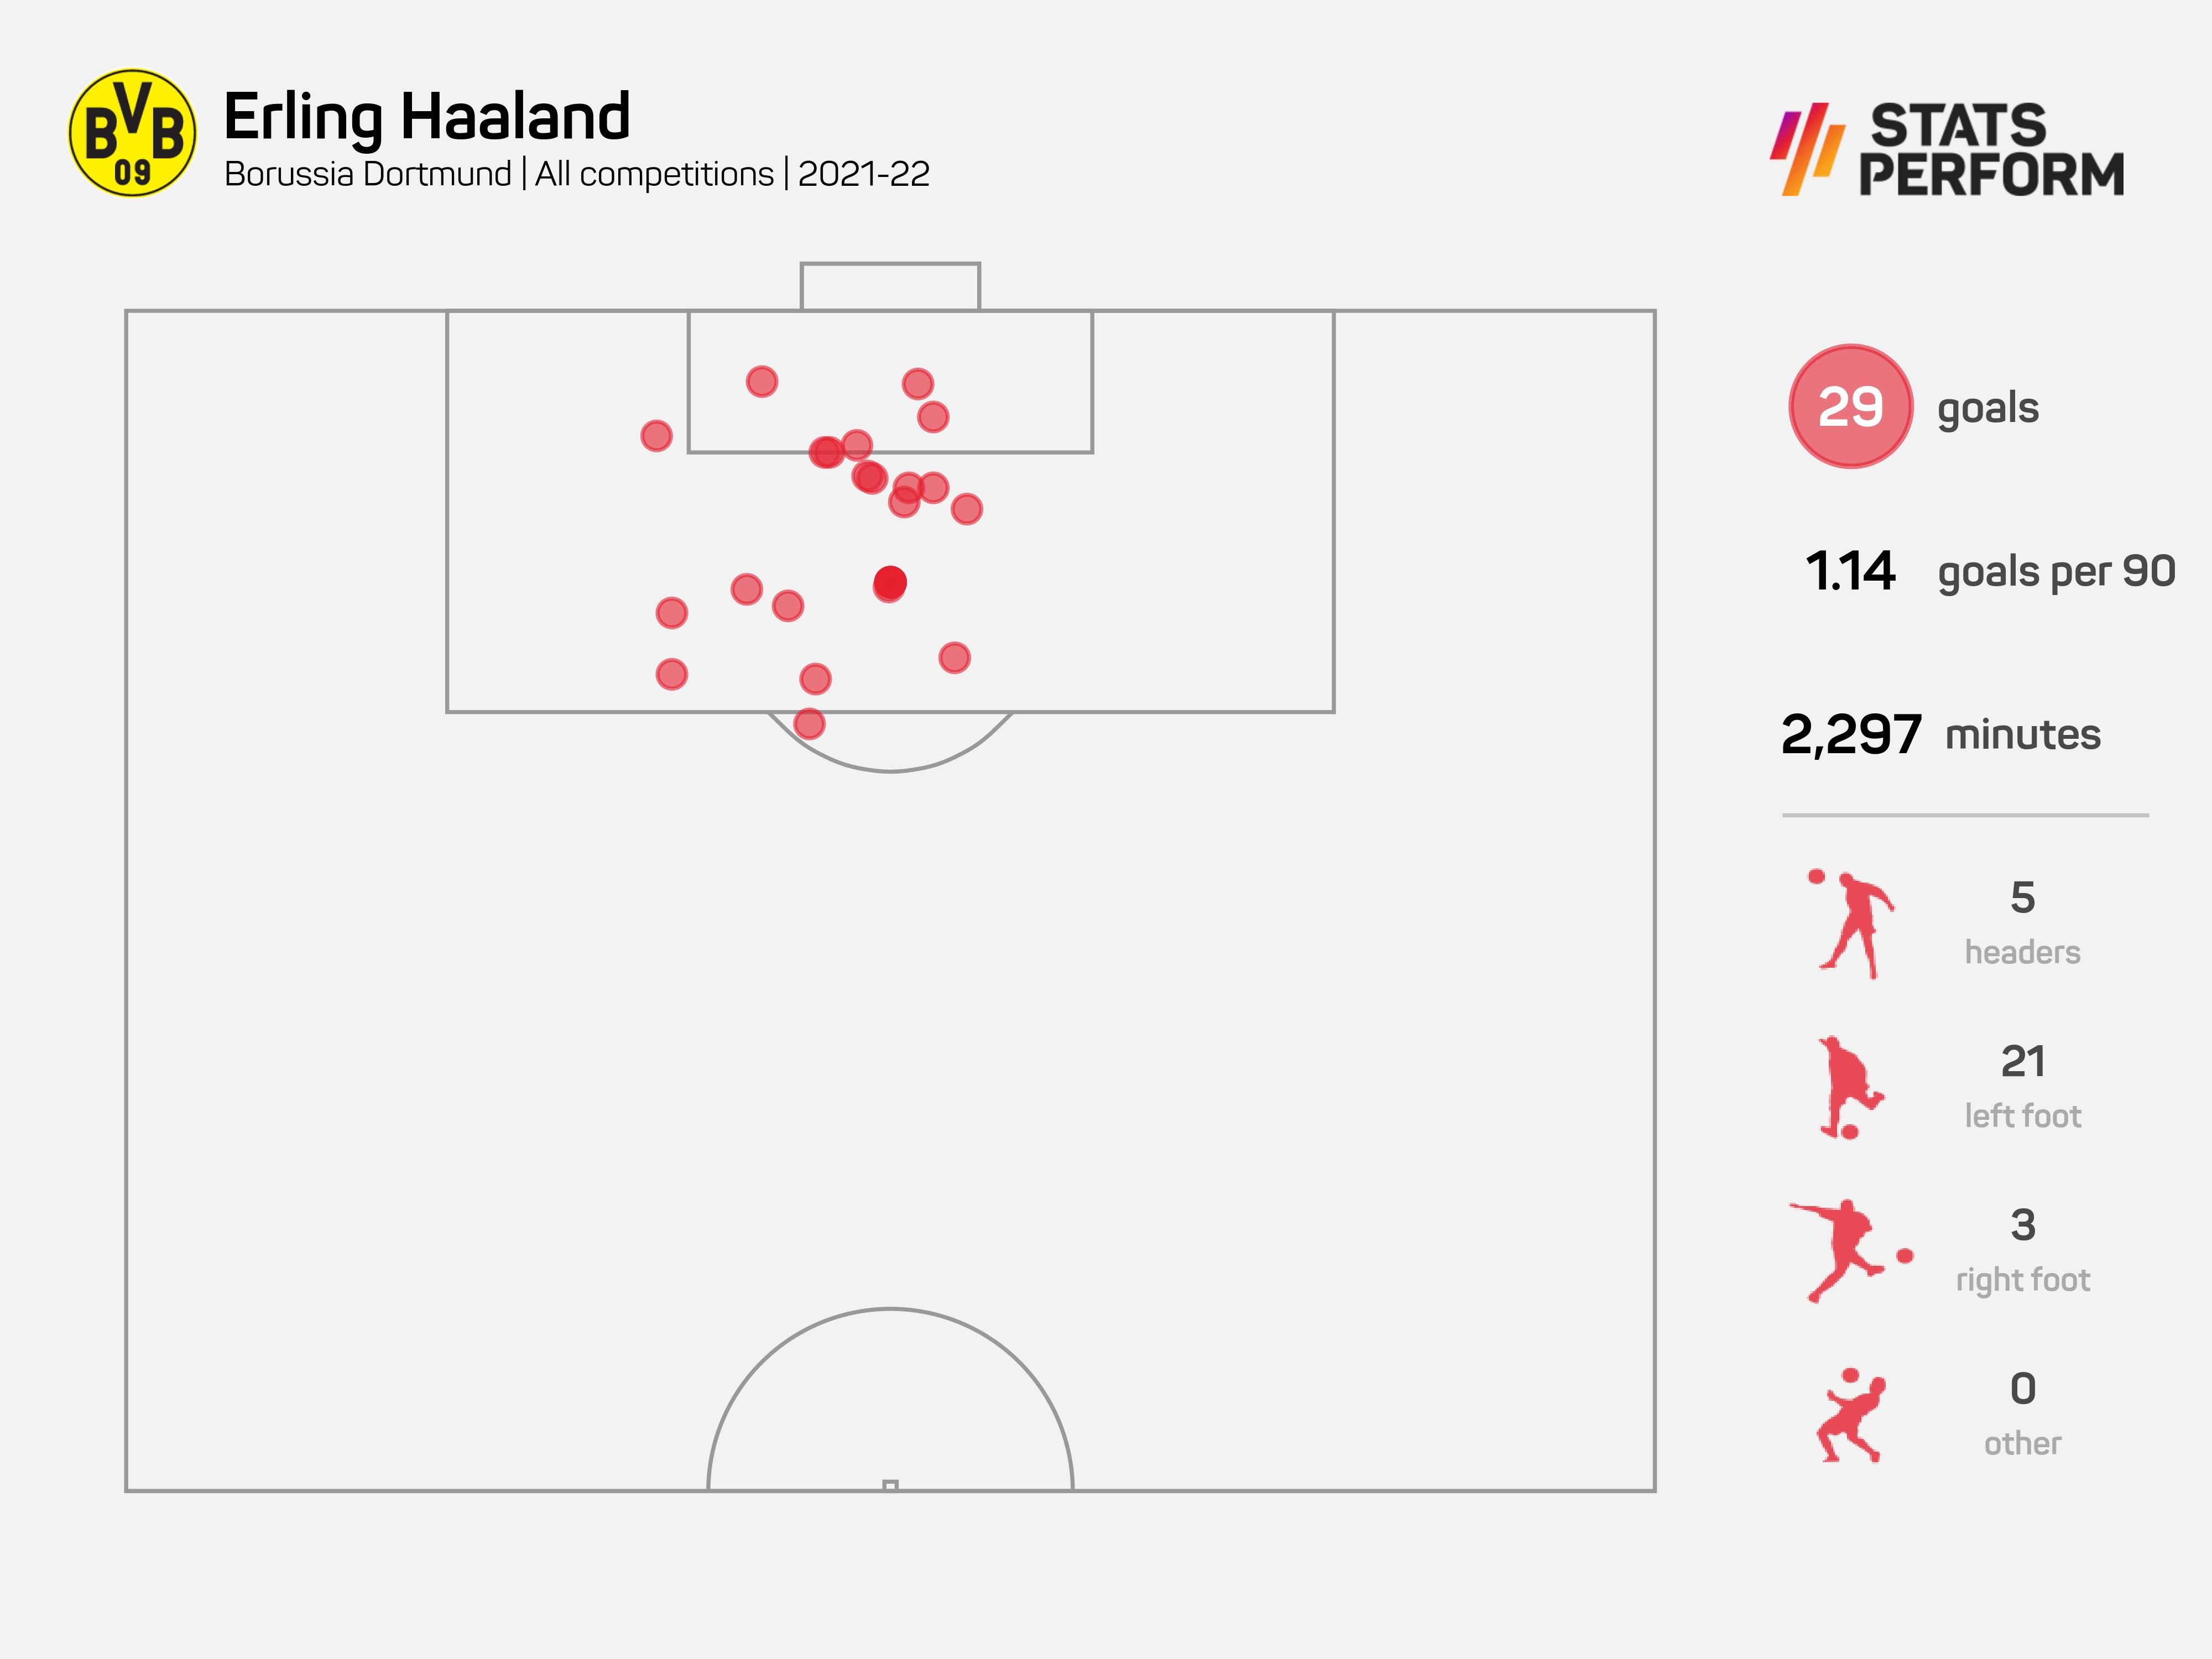 Erling Haaland scored 29 goals last season